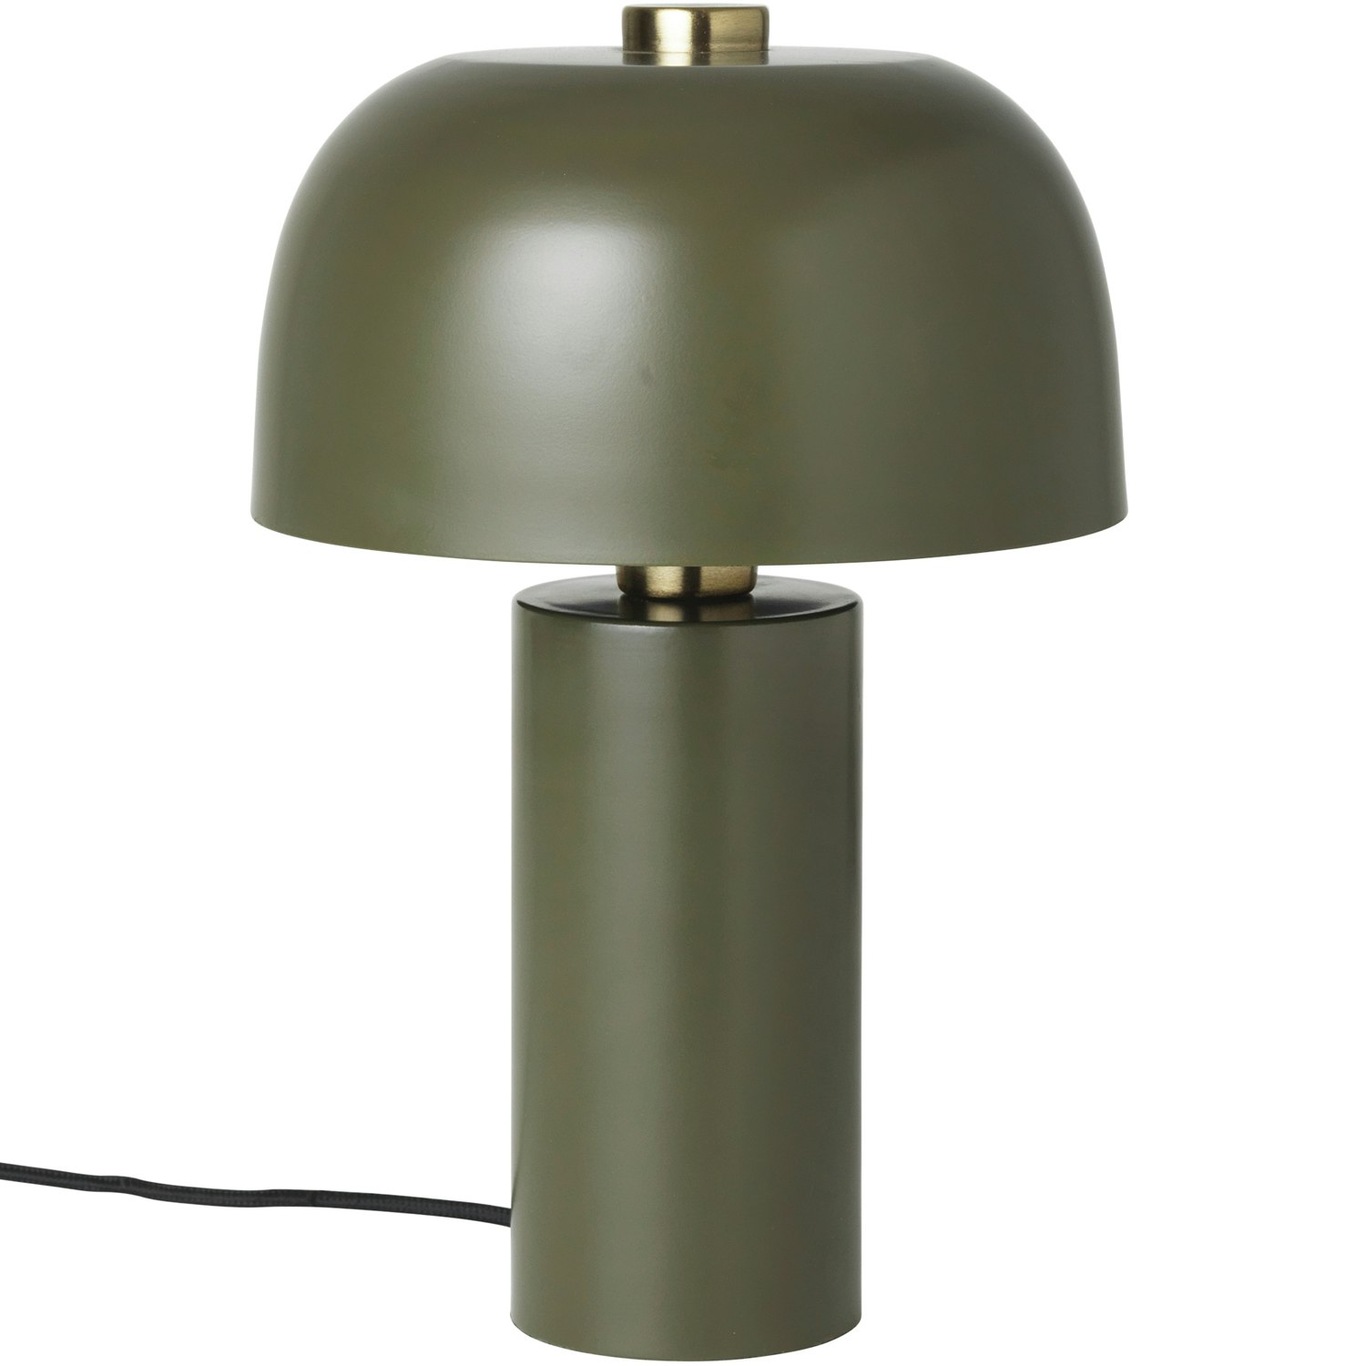 Lulu Classic Tafellamp, Army